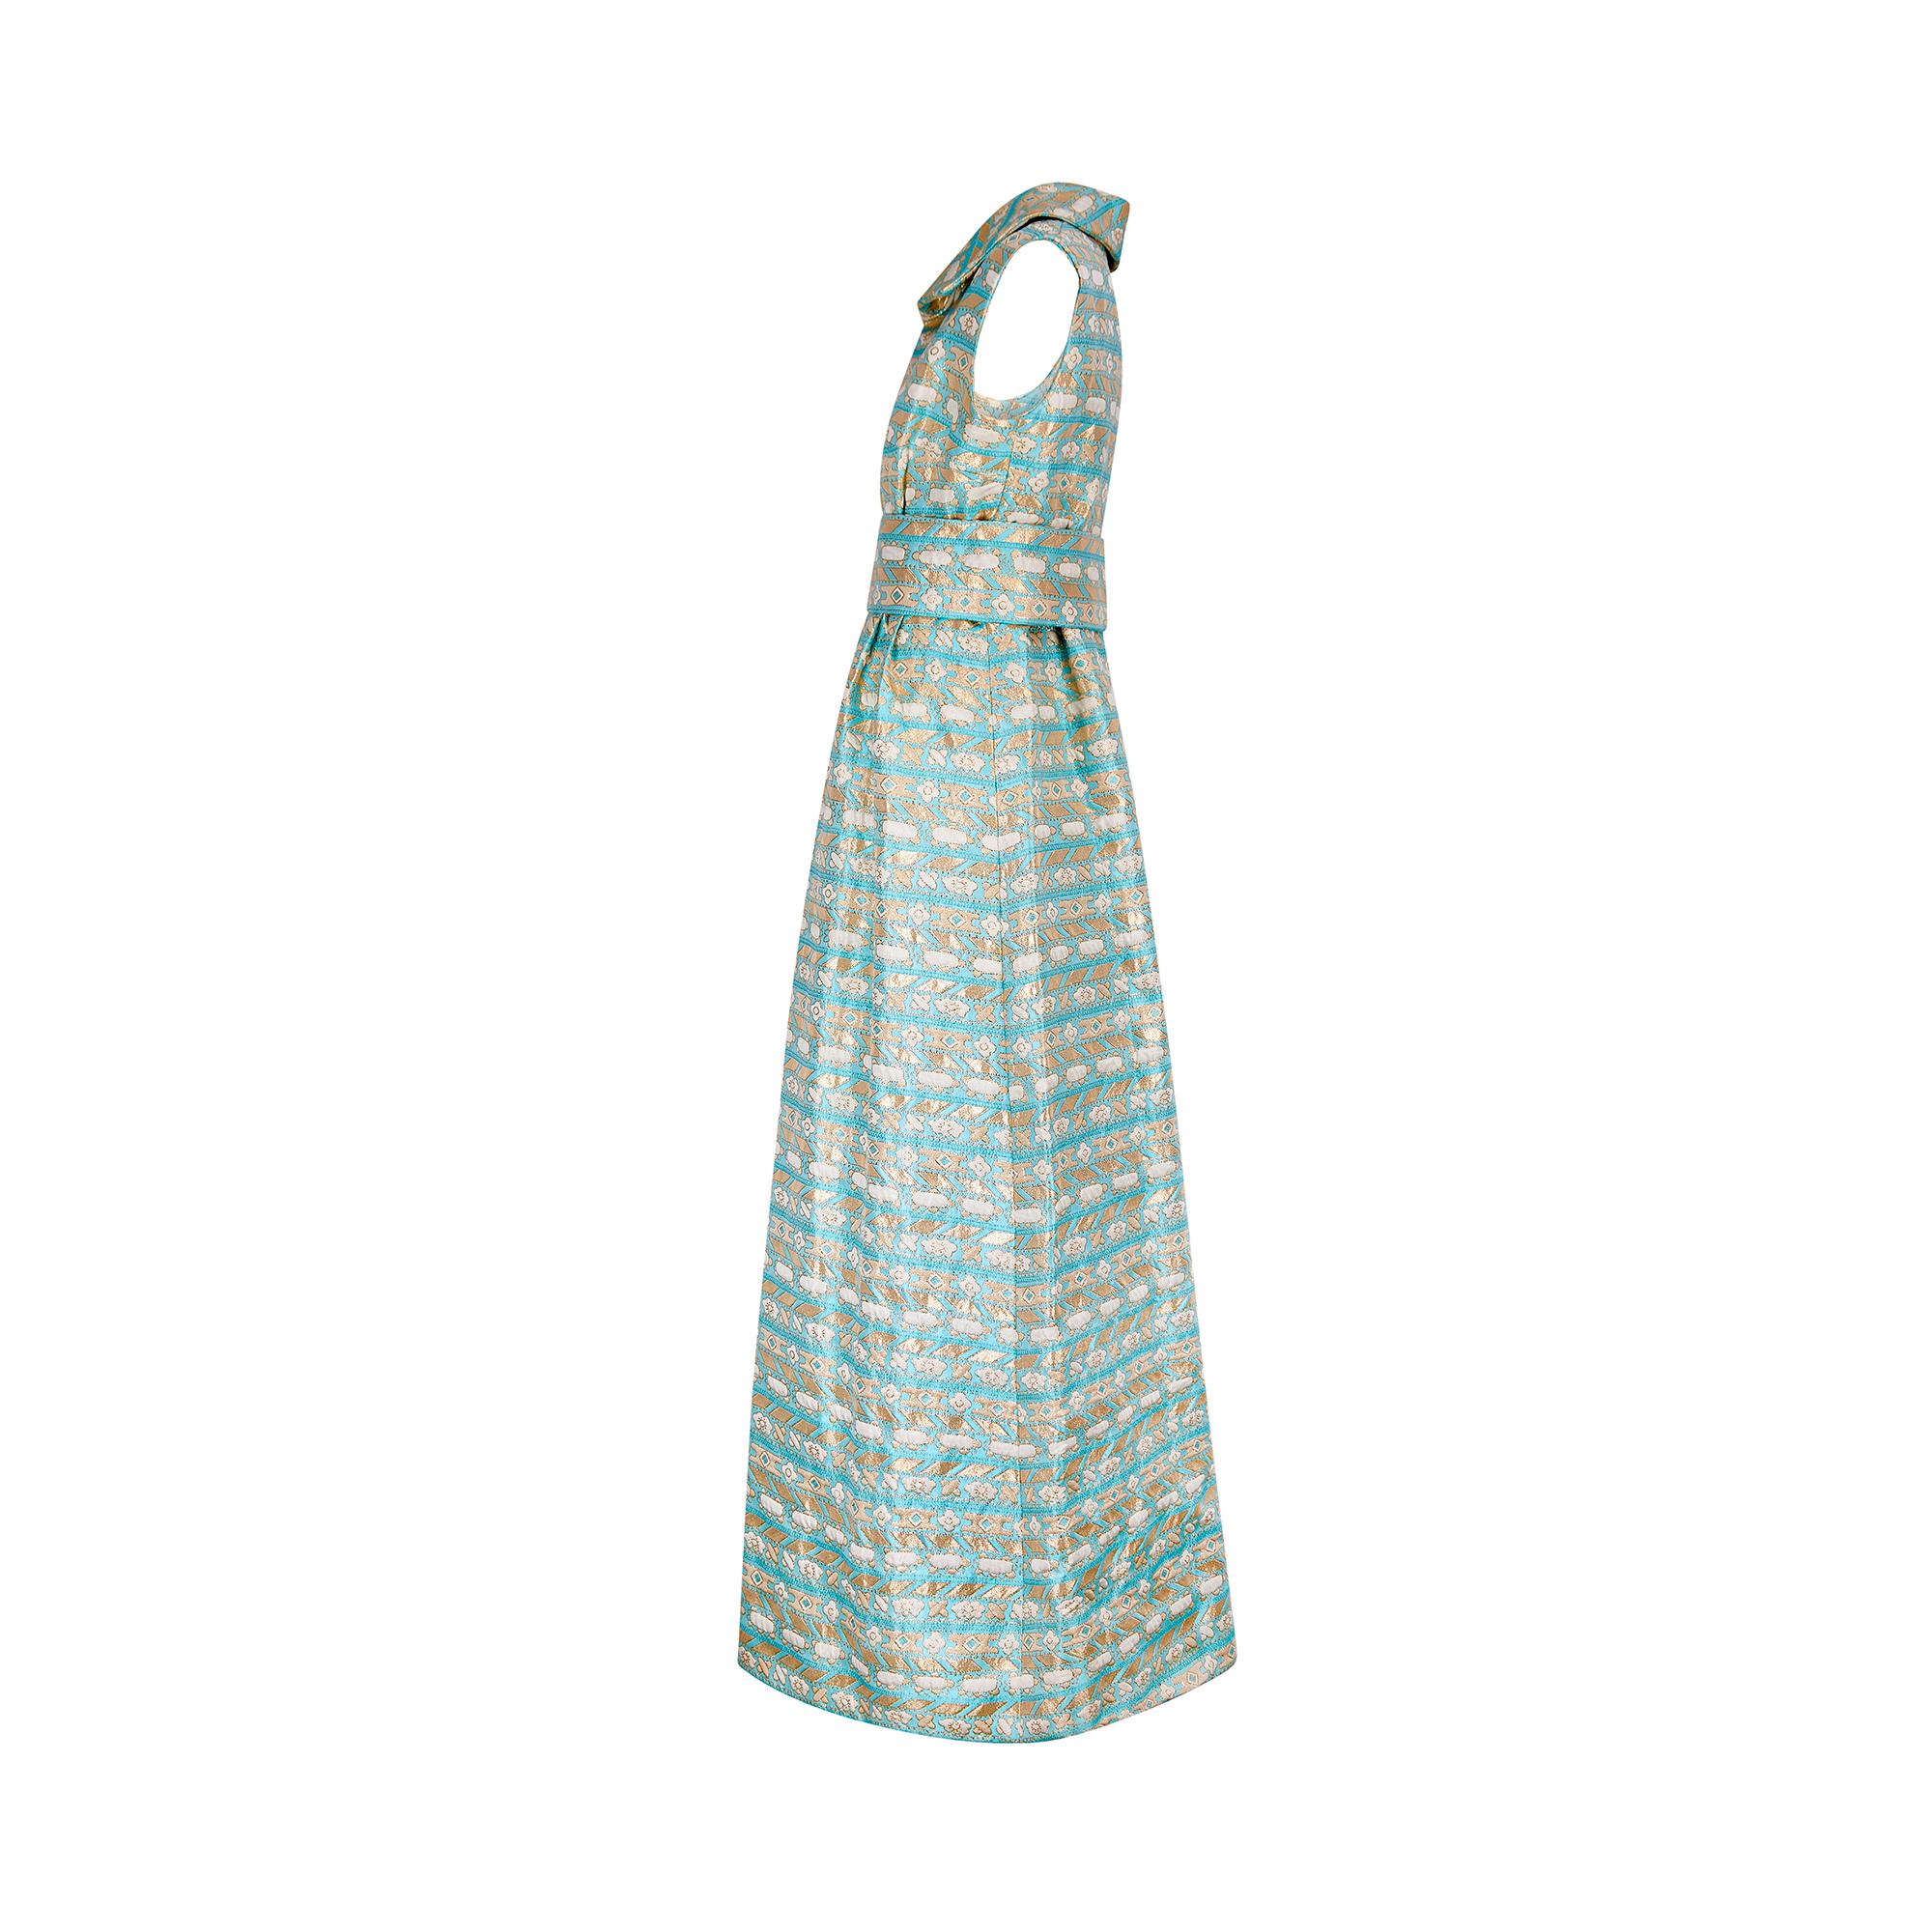 Dieses auffällige Kleid wurde in den späten 1960er bis frühen 1970er Jahren als Couture-Mode gefertigt. Der dicke aquafarbene Jacquard ist mit geometrischen, floralen und wolkenförmigen Stickereien in glitzerndem Metallic-Gold strukturiert. Dieses